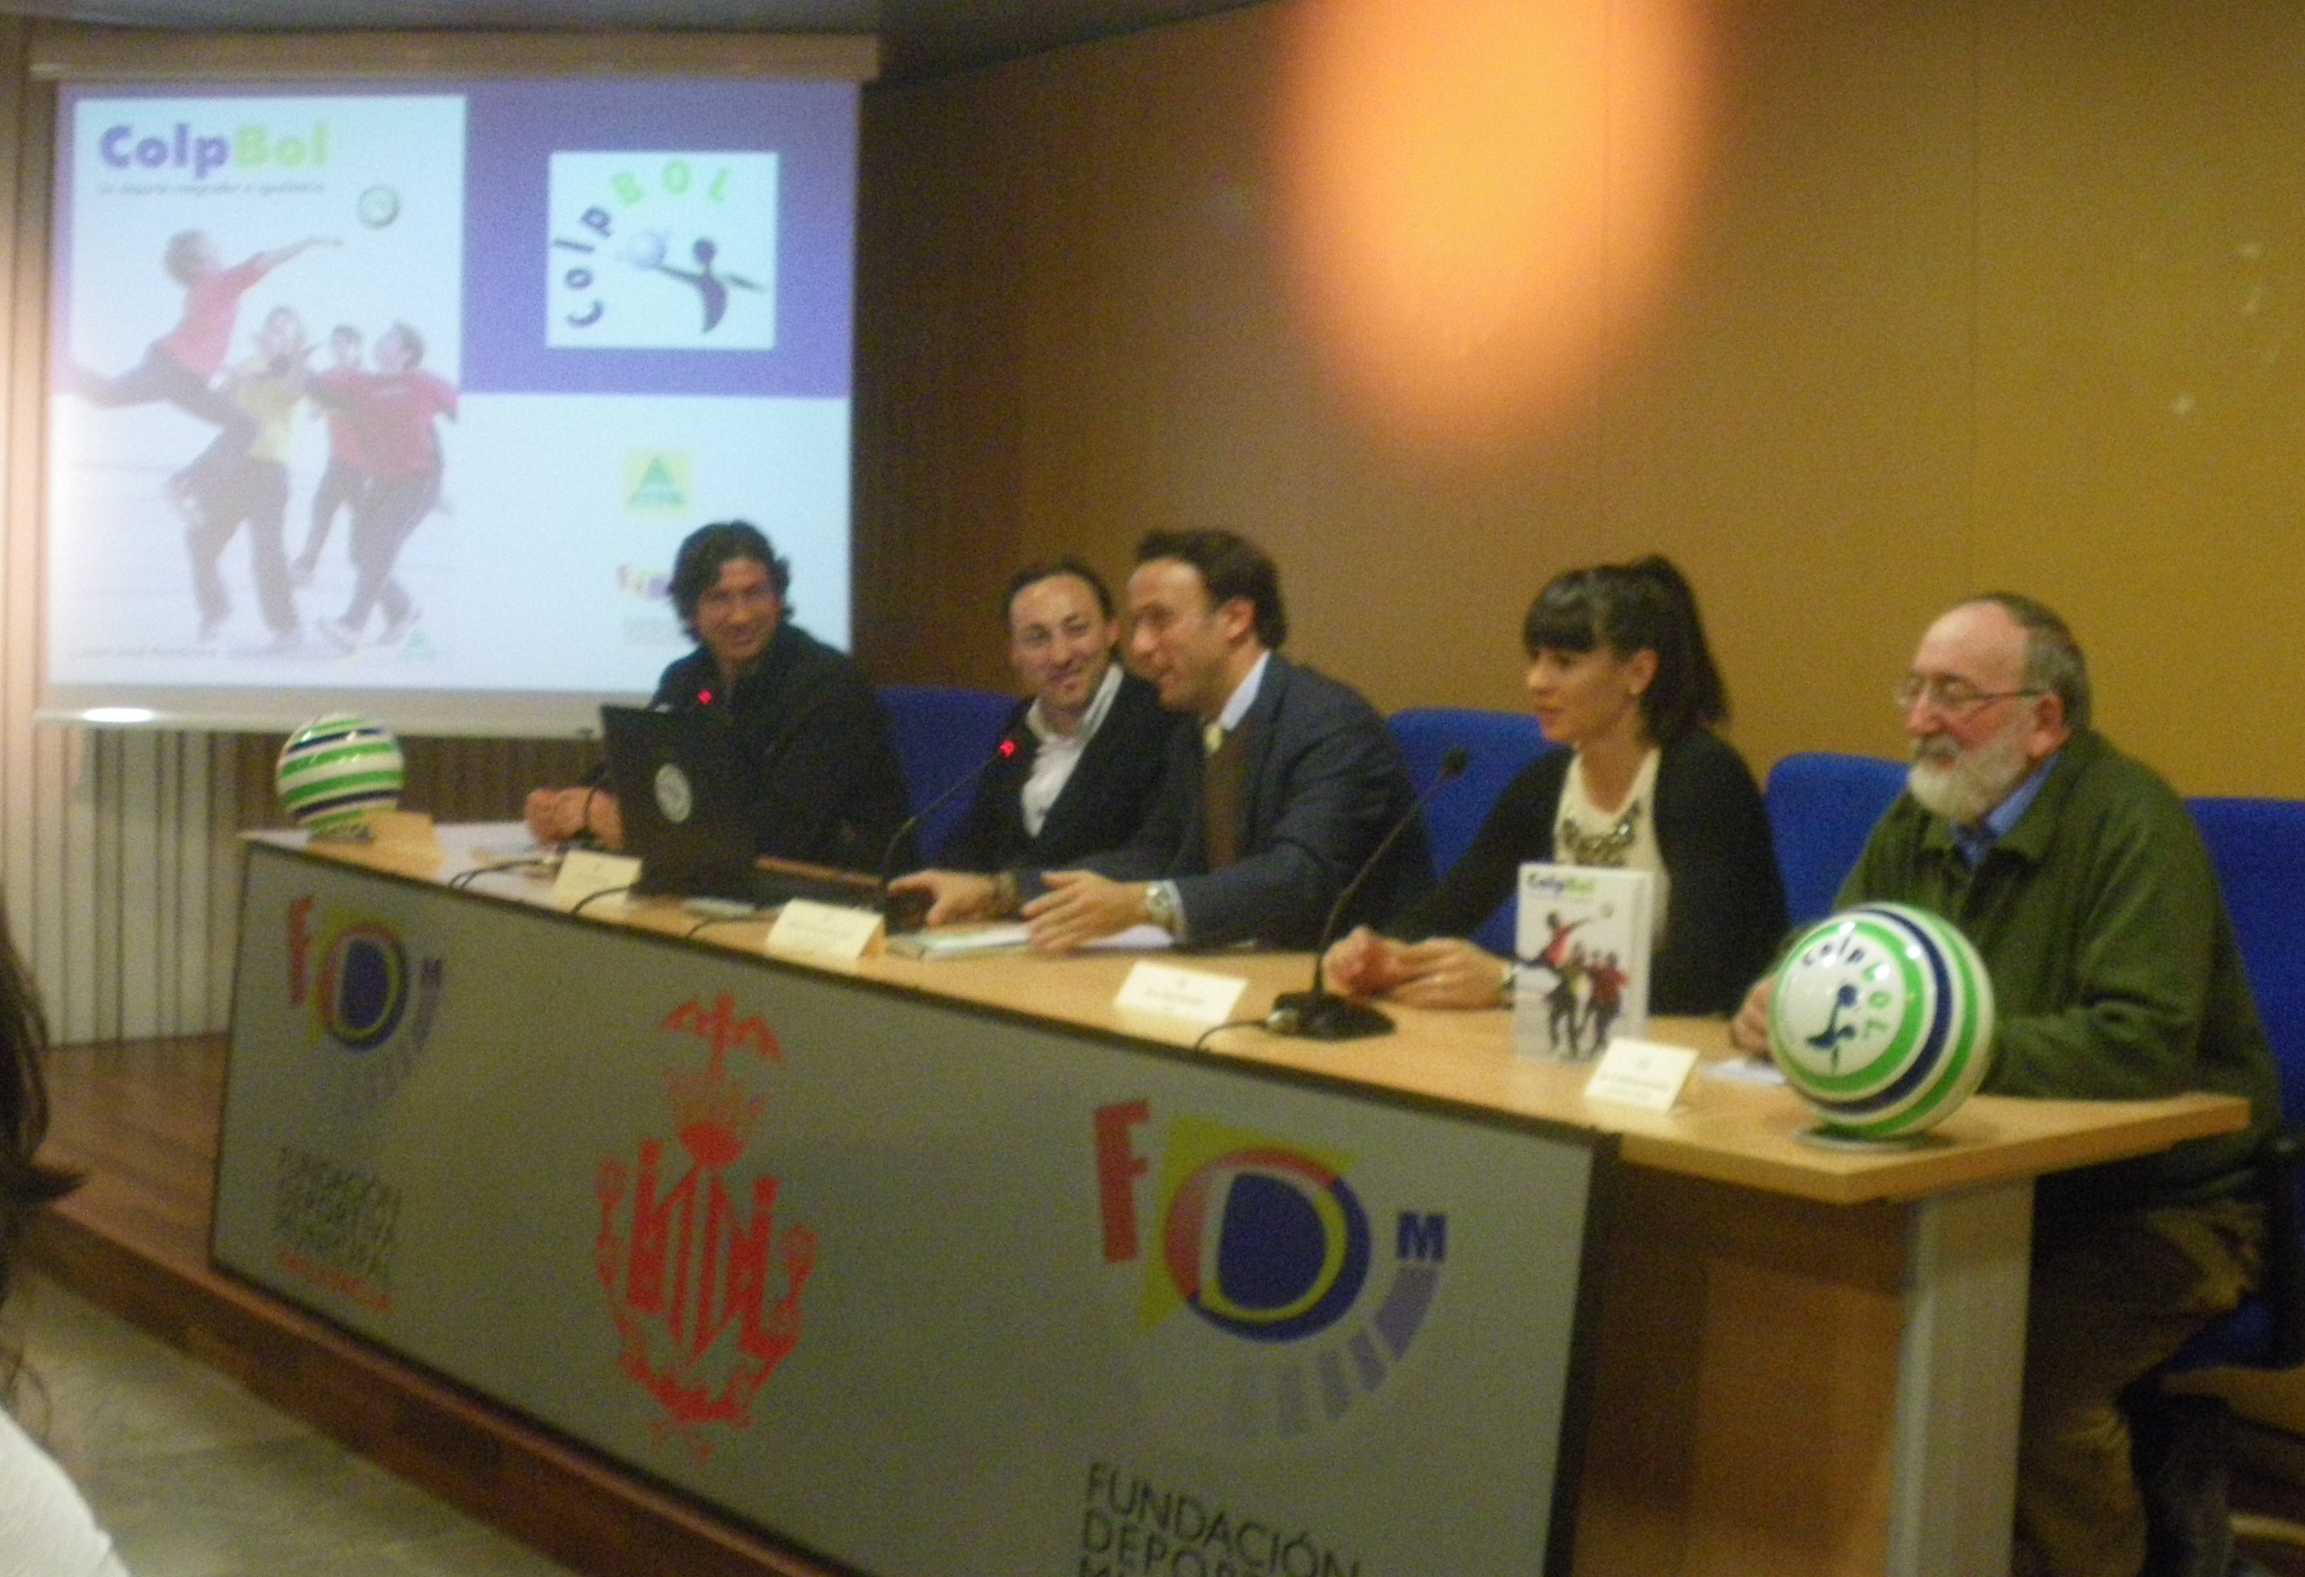 Presentación del libro sobre el Colpbol en el Complejo Deportivo La Petxina de Valencia